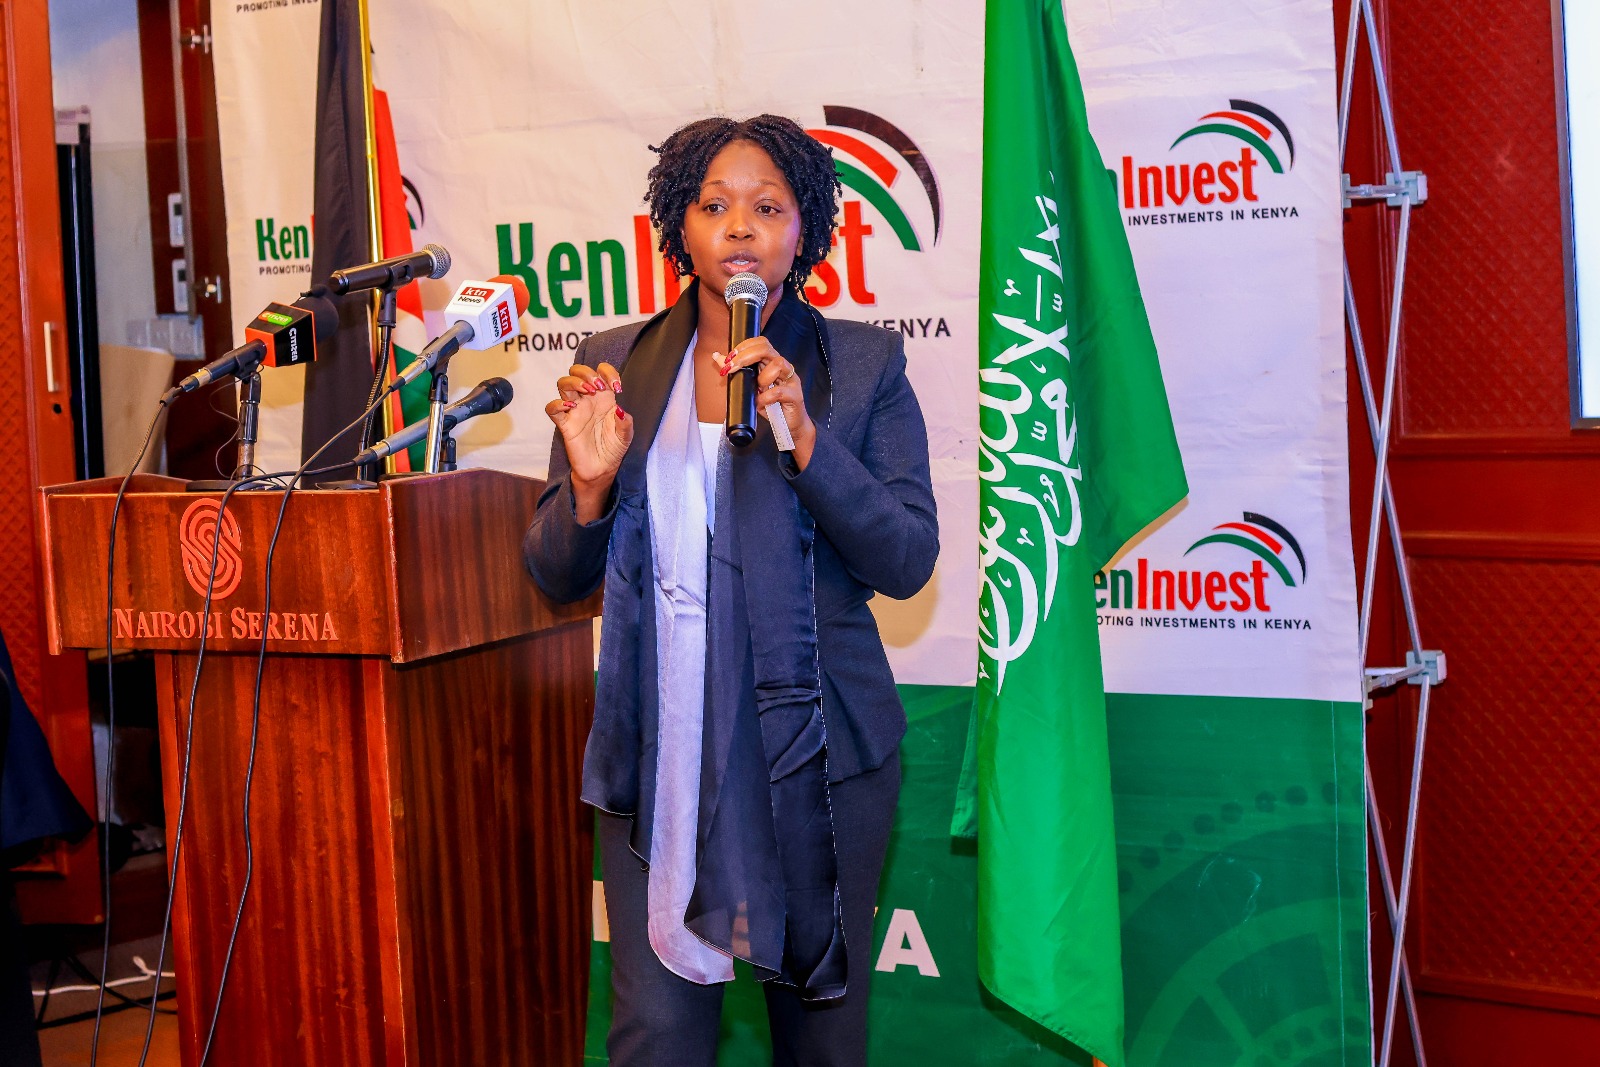 Managing Director, of Kenya Investment Authority June Chepkemei